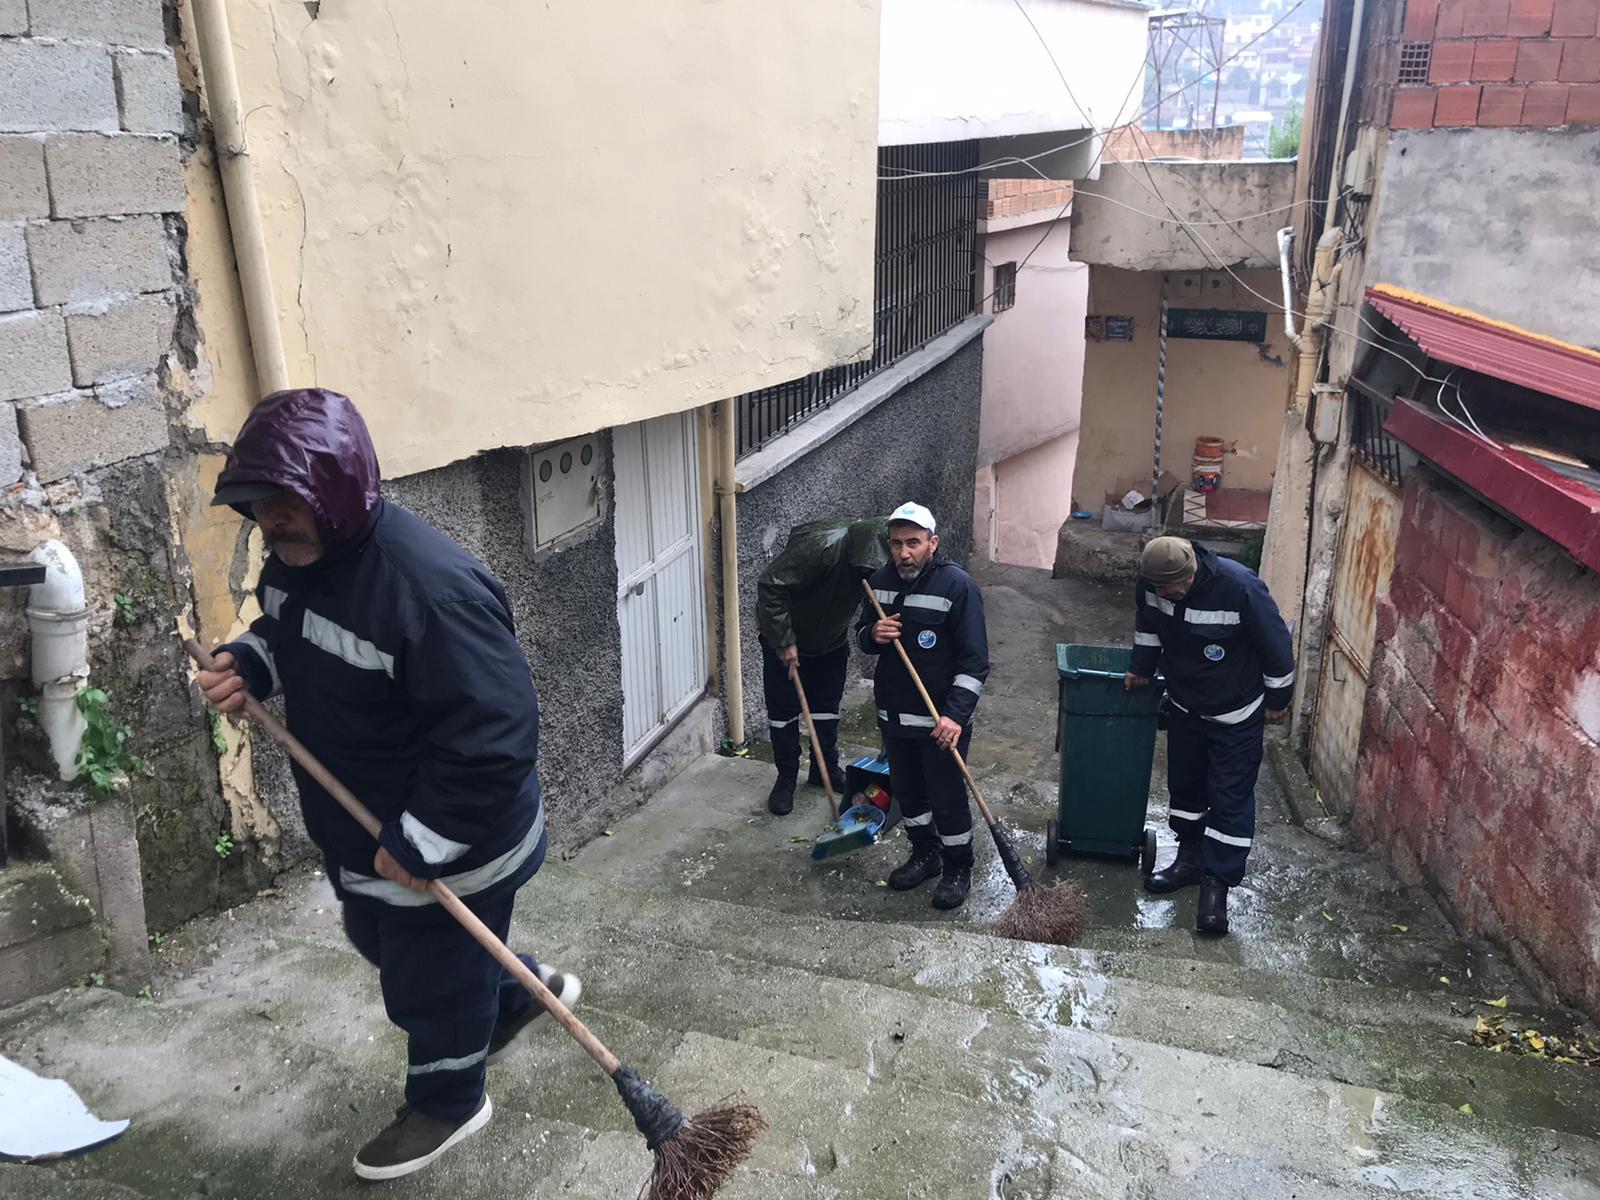 Antakya'yı etkisi altına alan şiddetli yağışların ardından Antakya Belediyesi, vatandaşların mağduriyetini en aza indirmek için kapsamlı temizlik çalışmalarına başladı. 